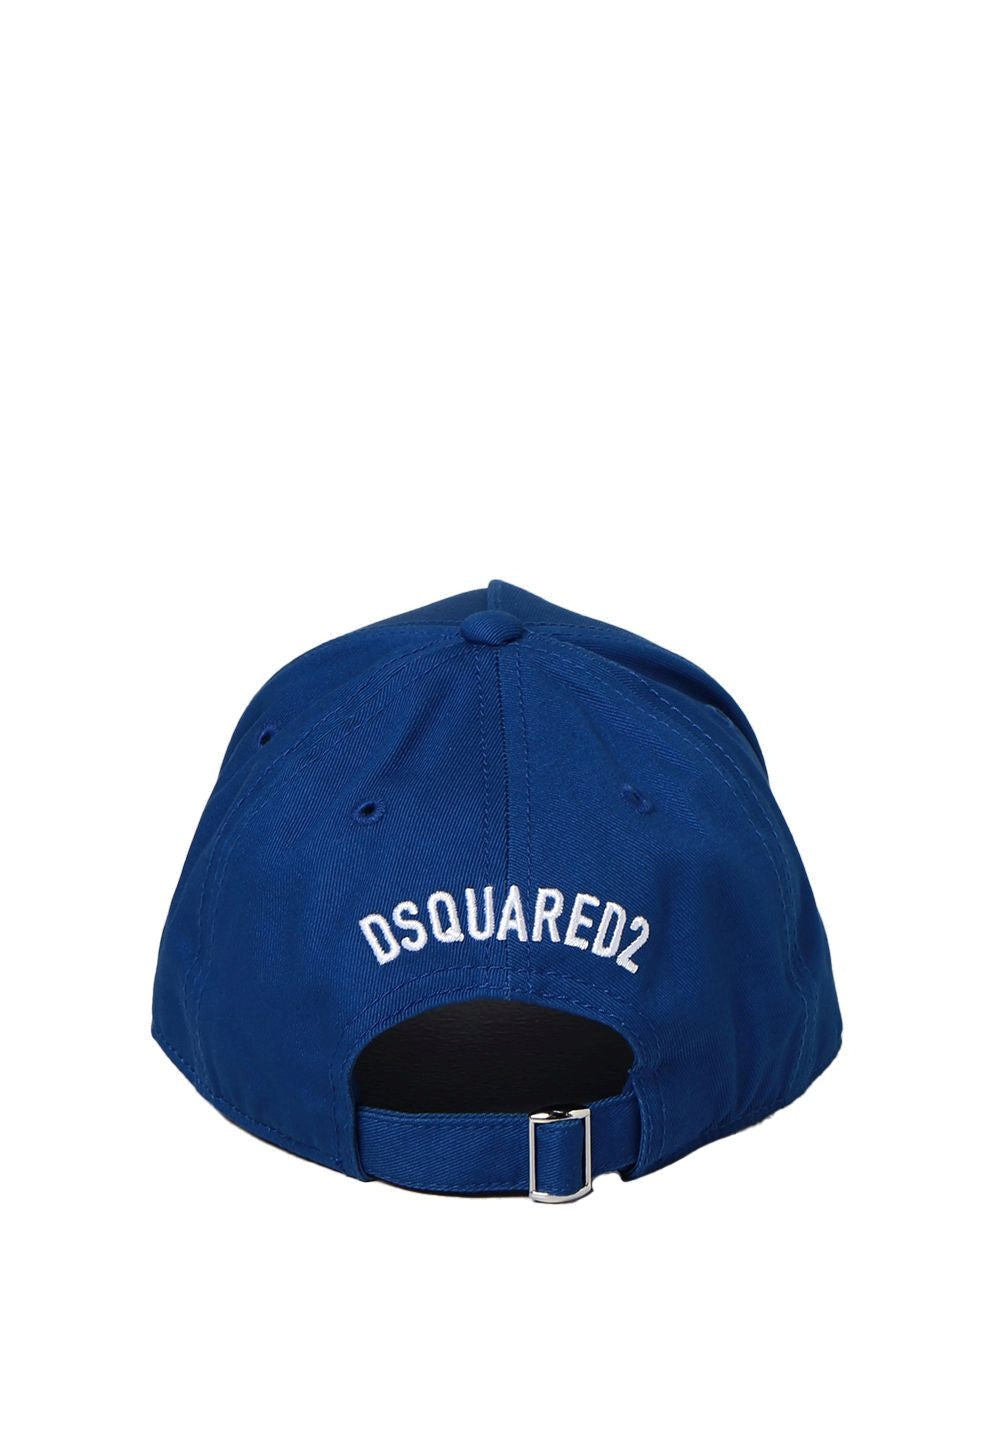 Blauer Hut für Kinder